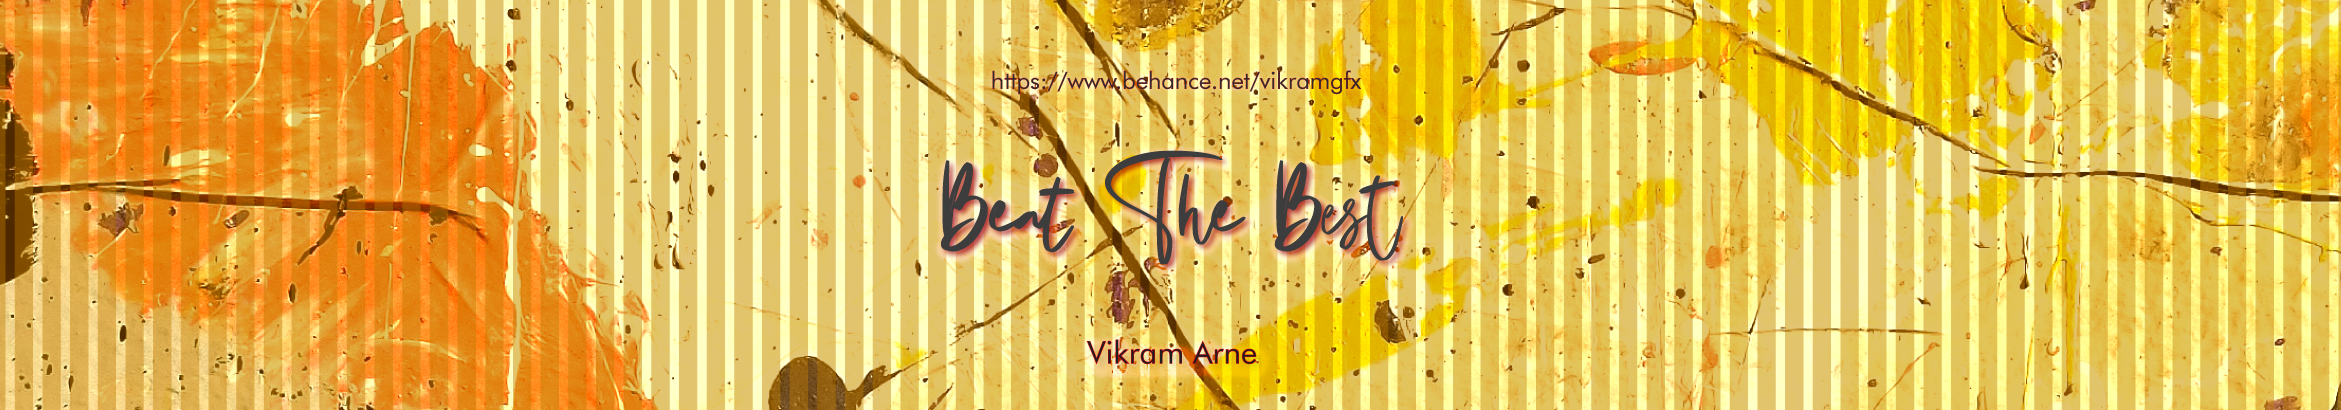 Profil-Banner von Vikram Arne